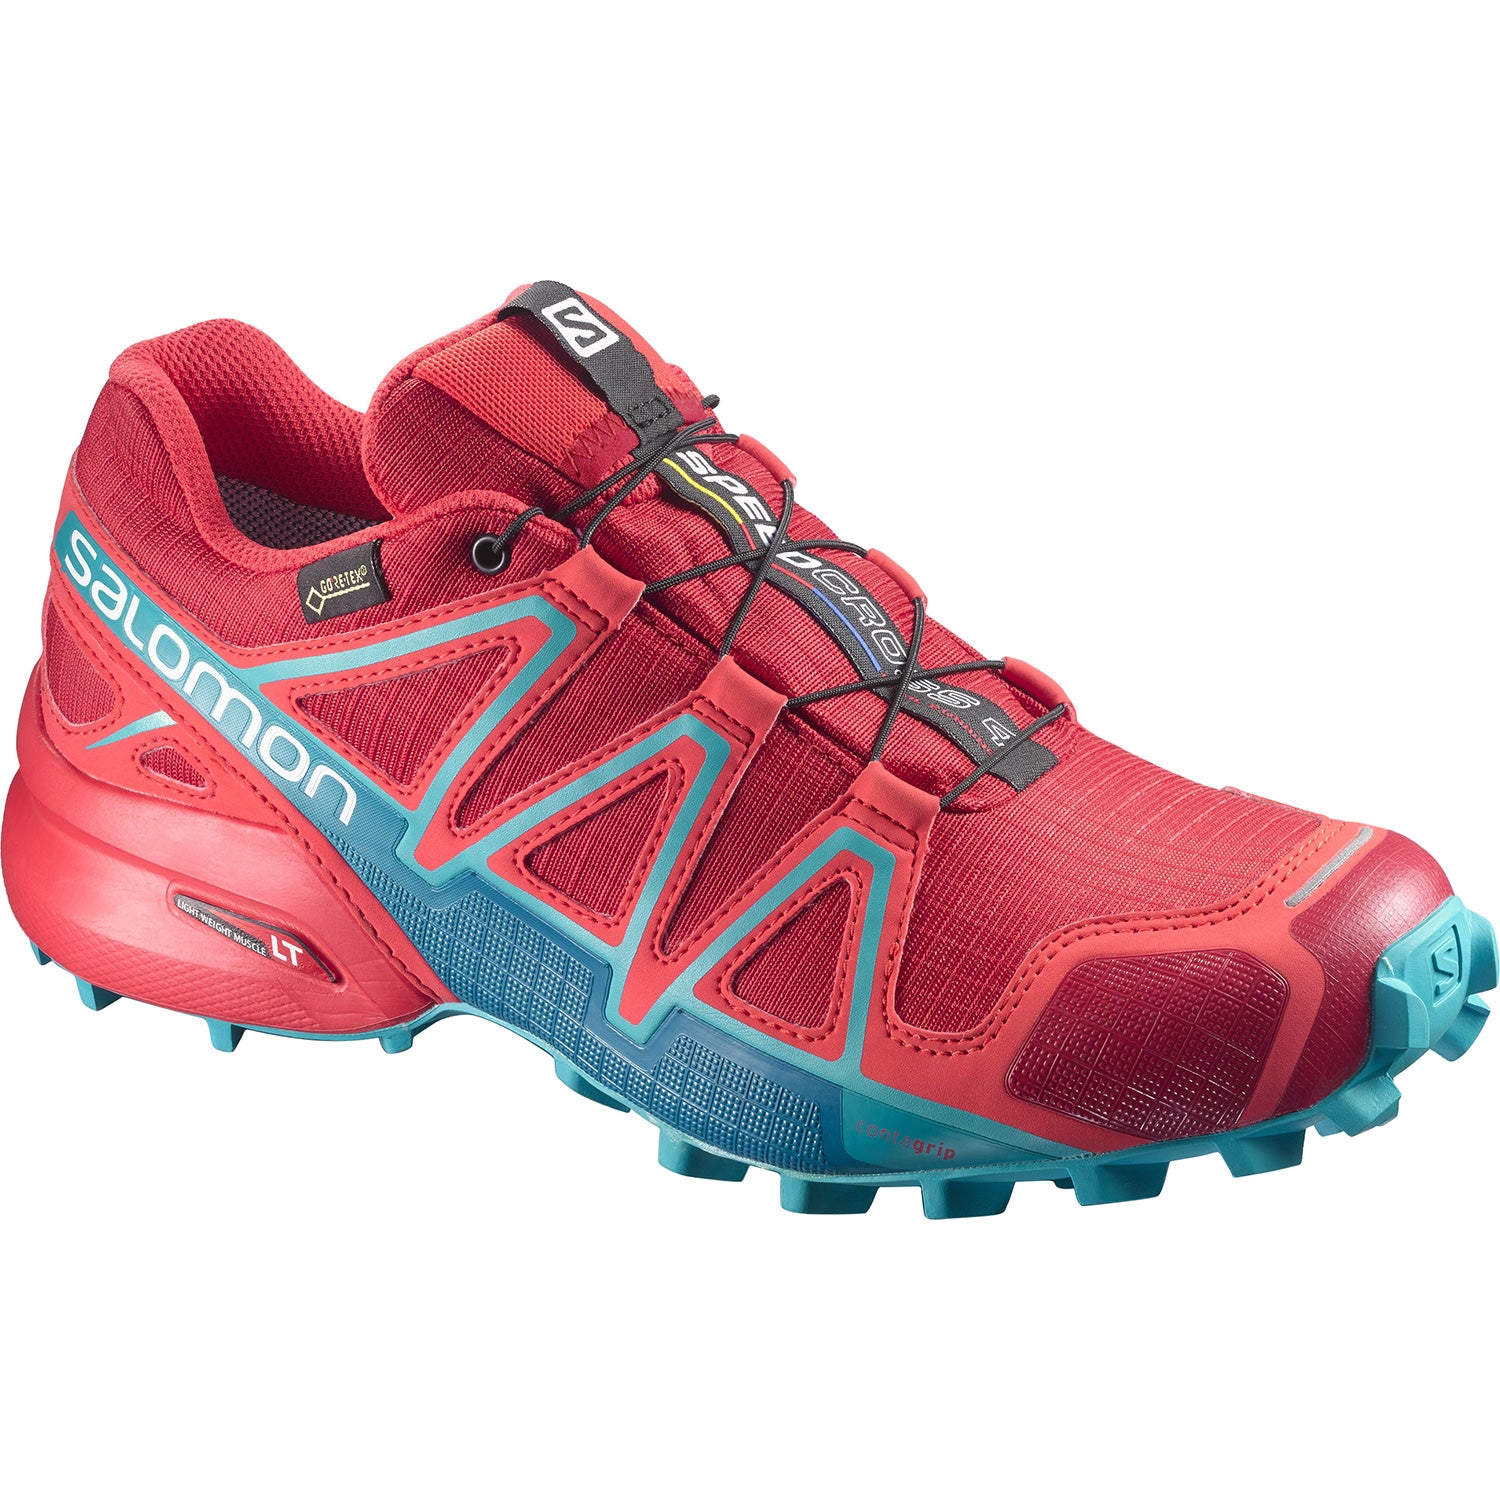 Speedcross 4 GTX Trail-Running Shoes - Women's